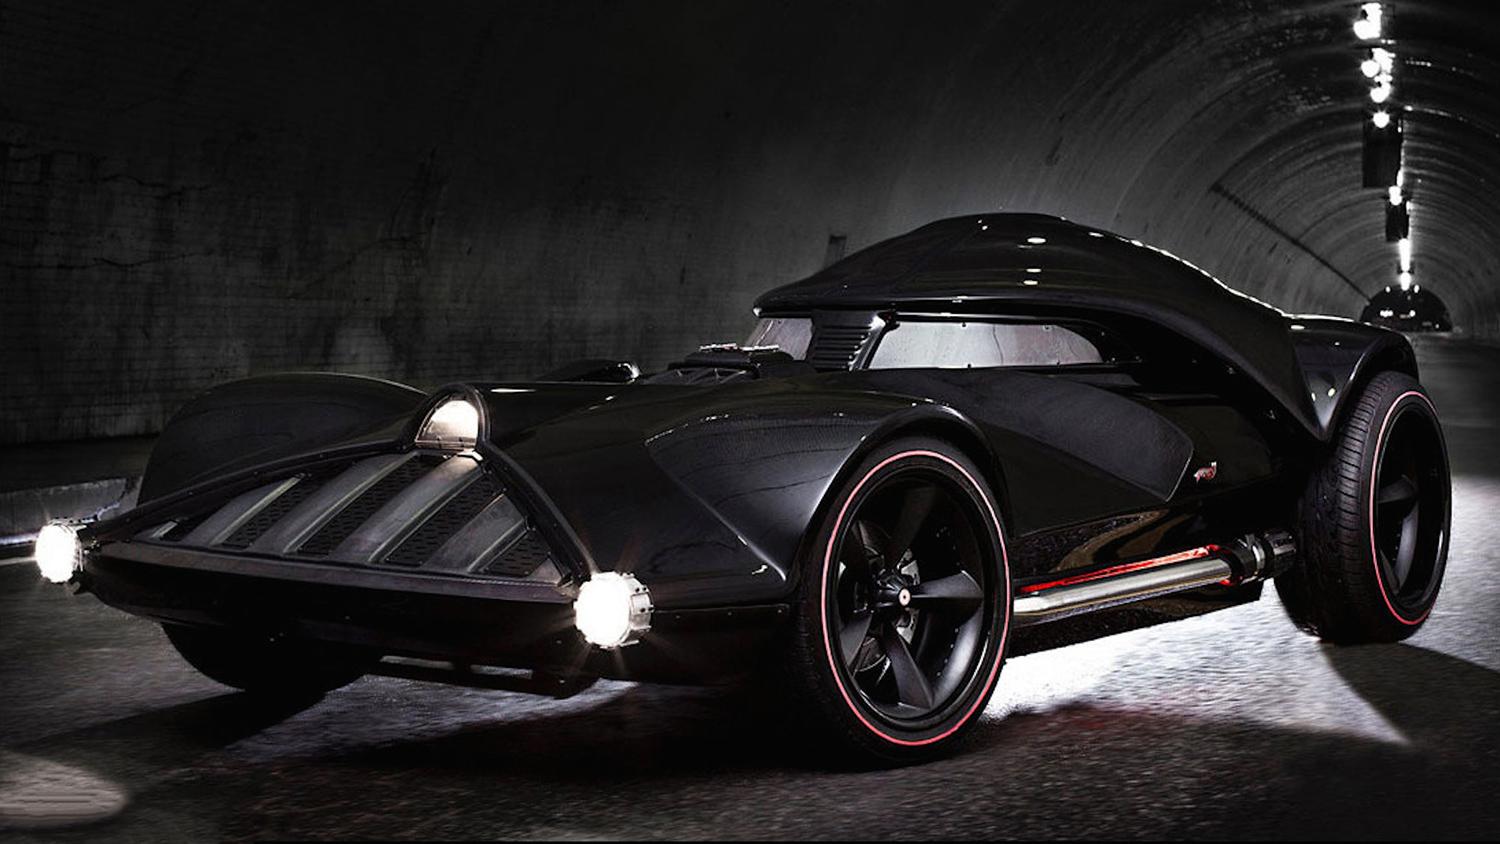 Mattel Hot Wheels Darth Vader Car